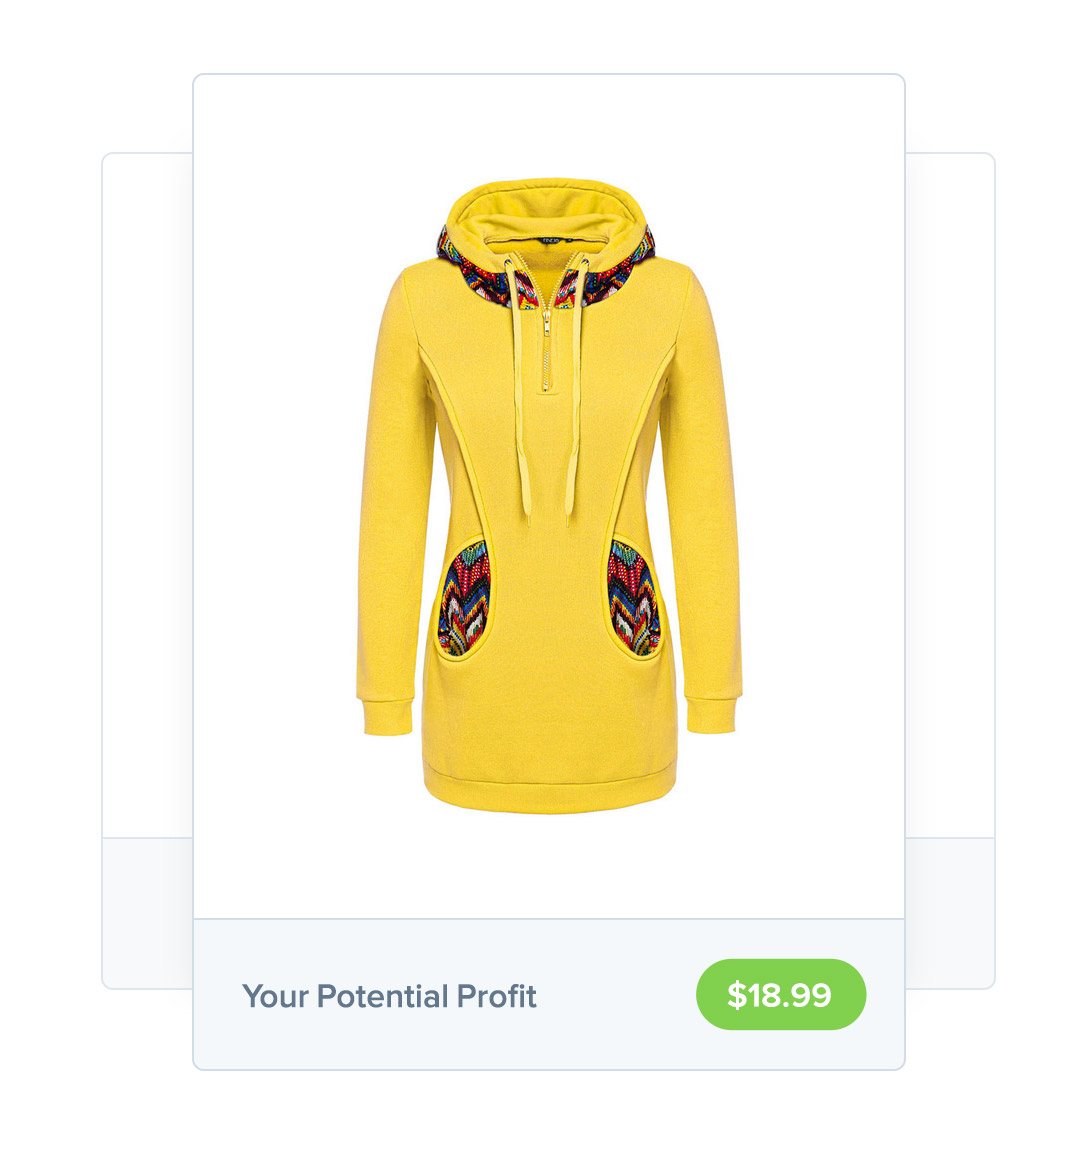 sell hoodies online